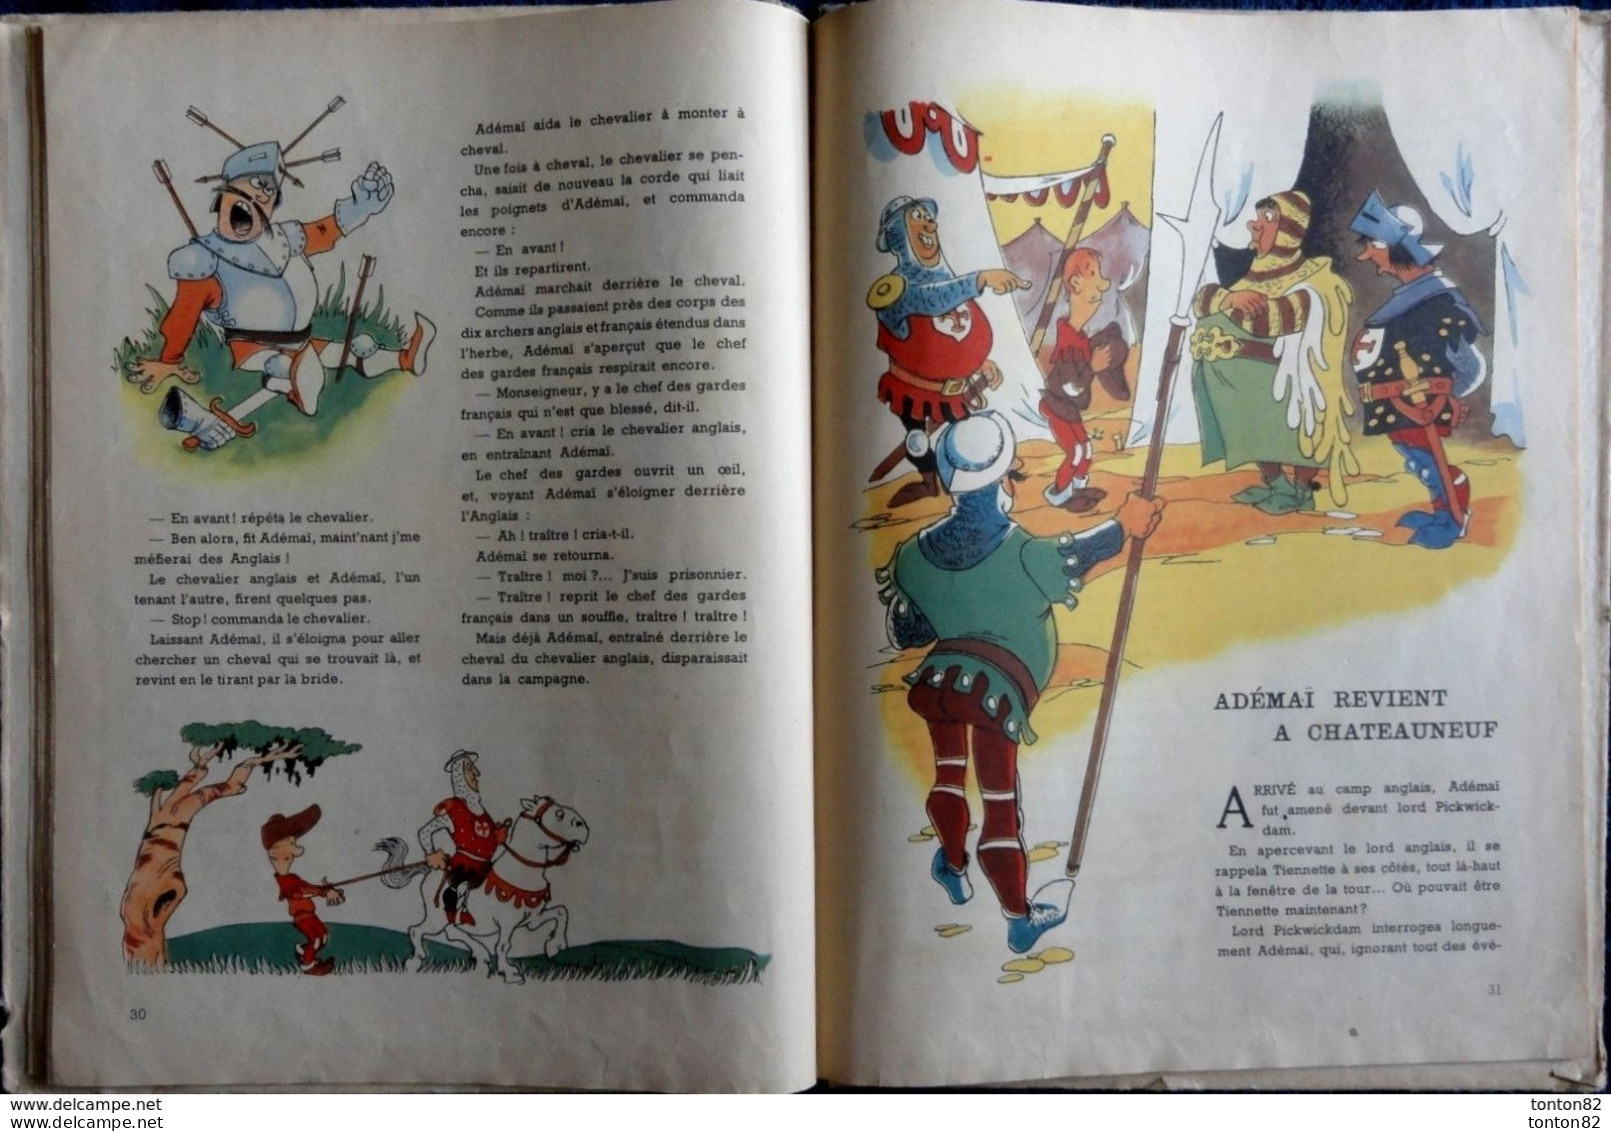 Paul Colline - Ademaï au Moyen-Âge - Les Grandes Éditions Françaises - ( 1947 ) - Illustrations de Moallic .